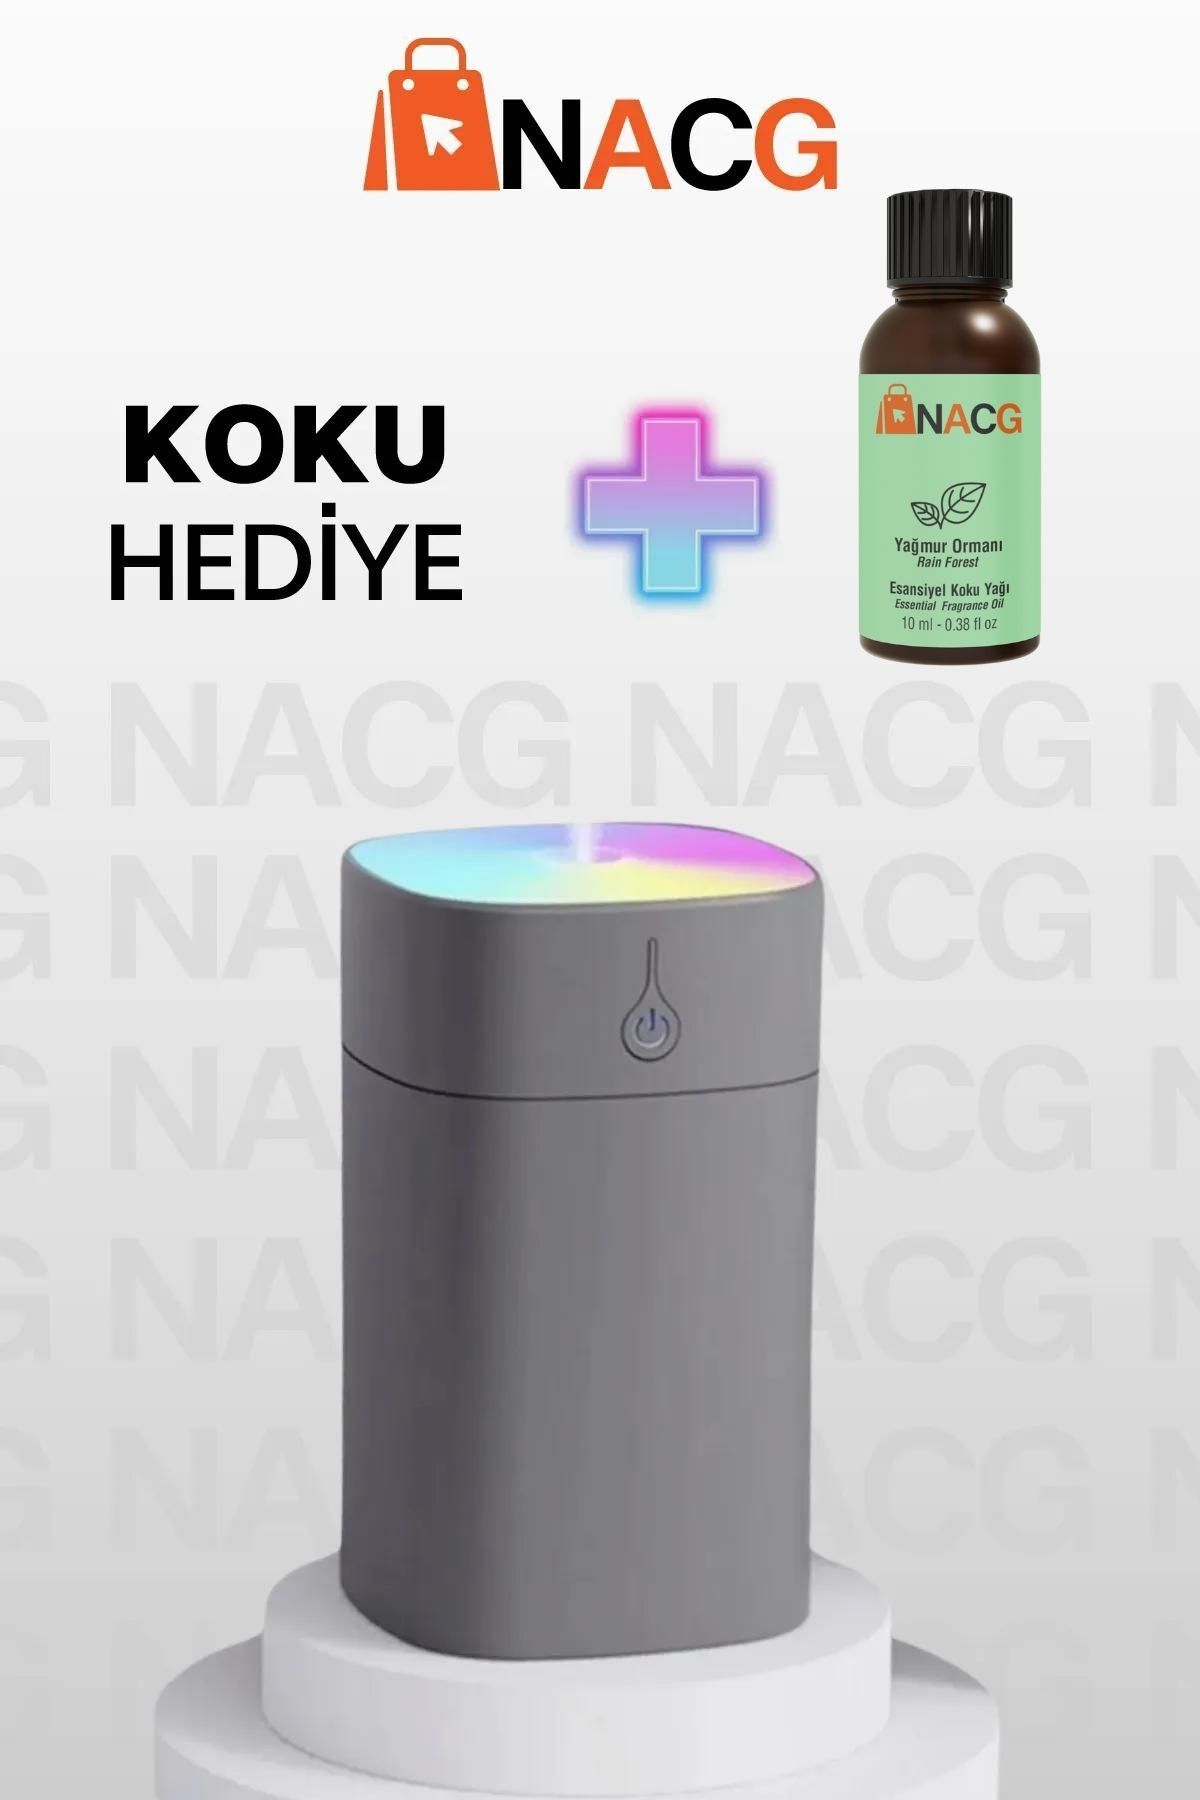 NACG H2o Humidifier 400 ml Ulrasonik Hava Nemlendirici Buhar Makinesi Ve Aroma Difüzörü Gri